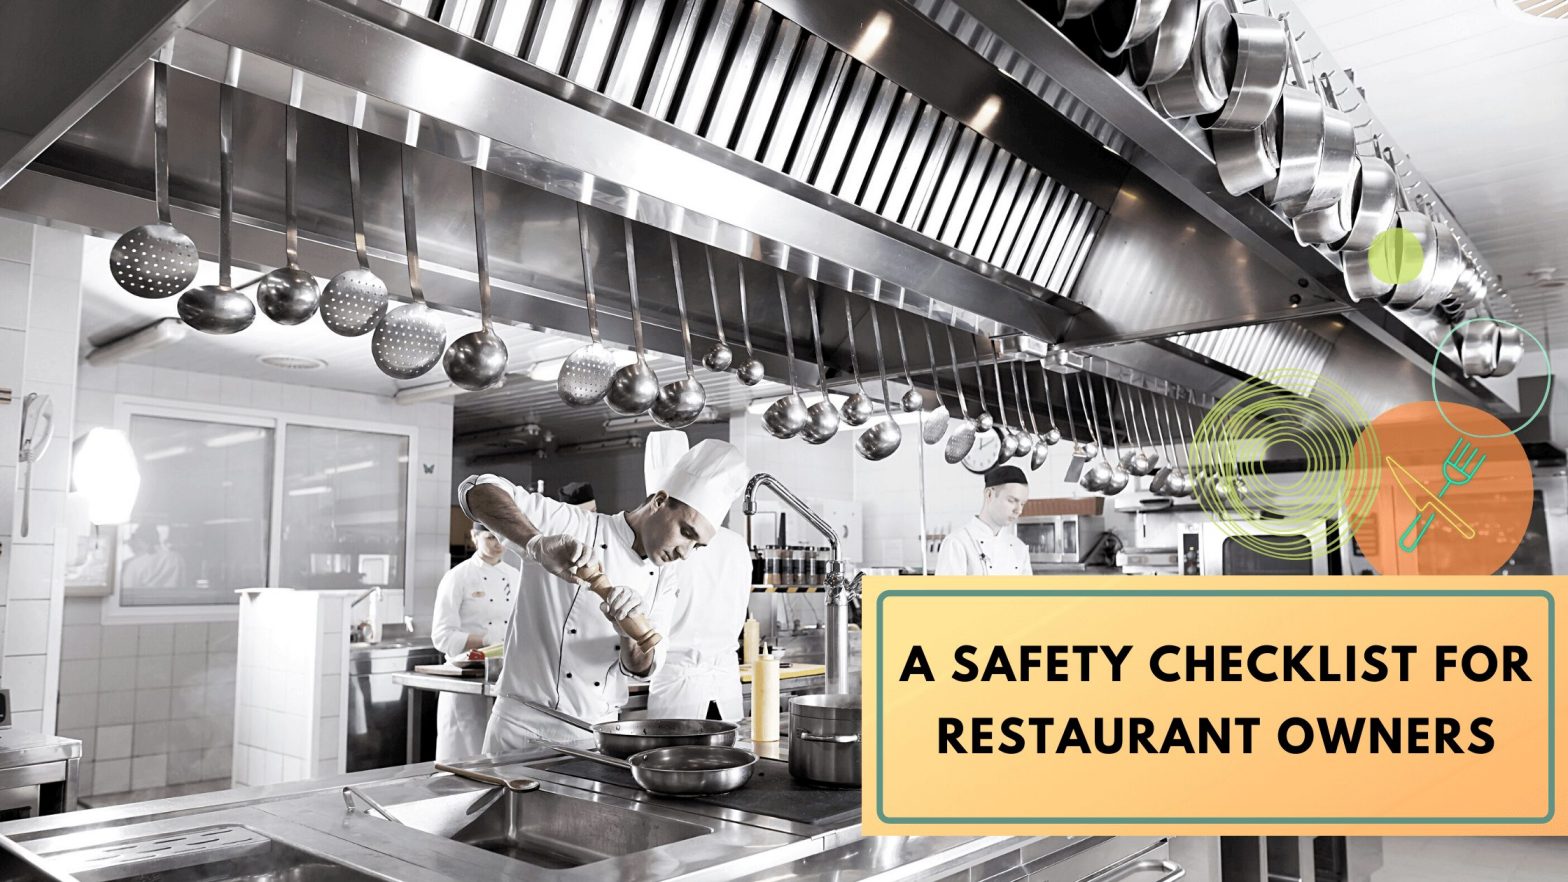 Restaurant kitchen equipment safety checklist